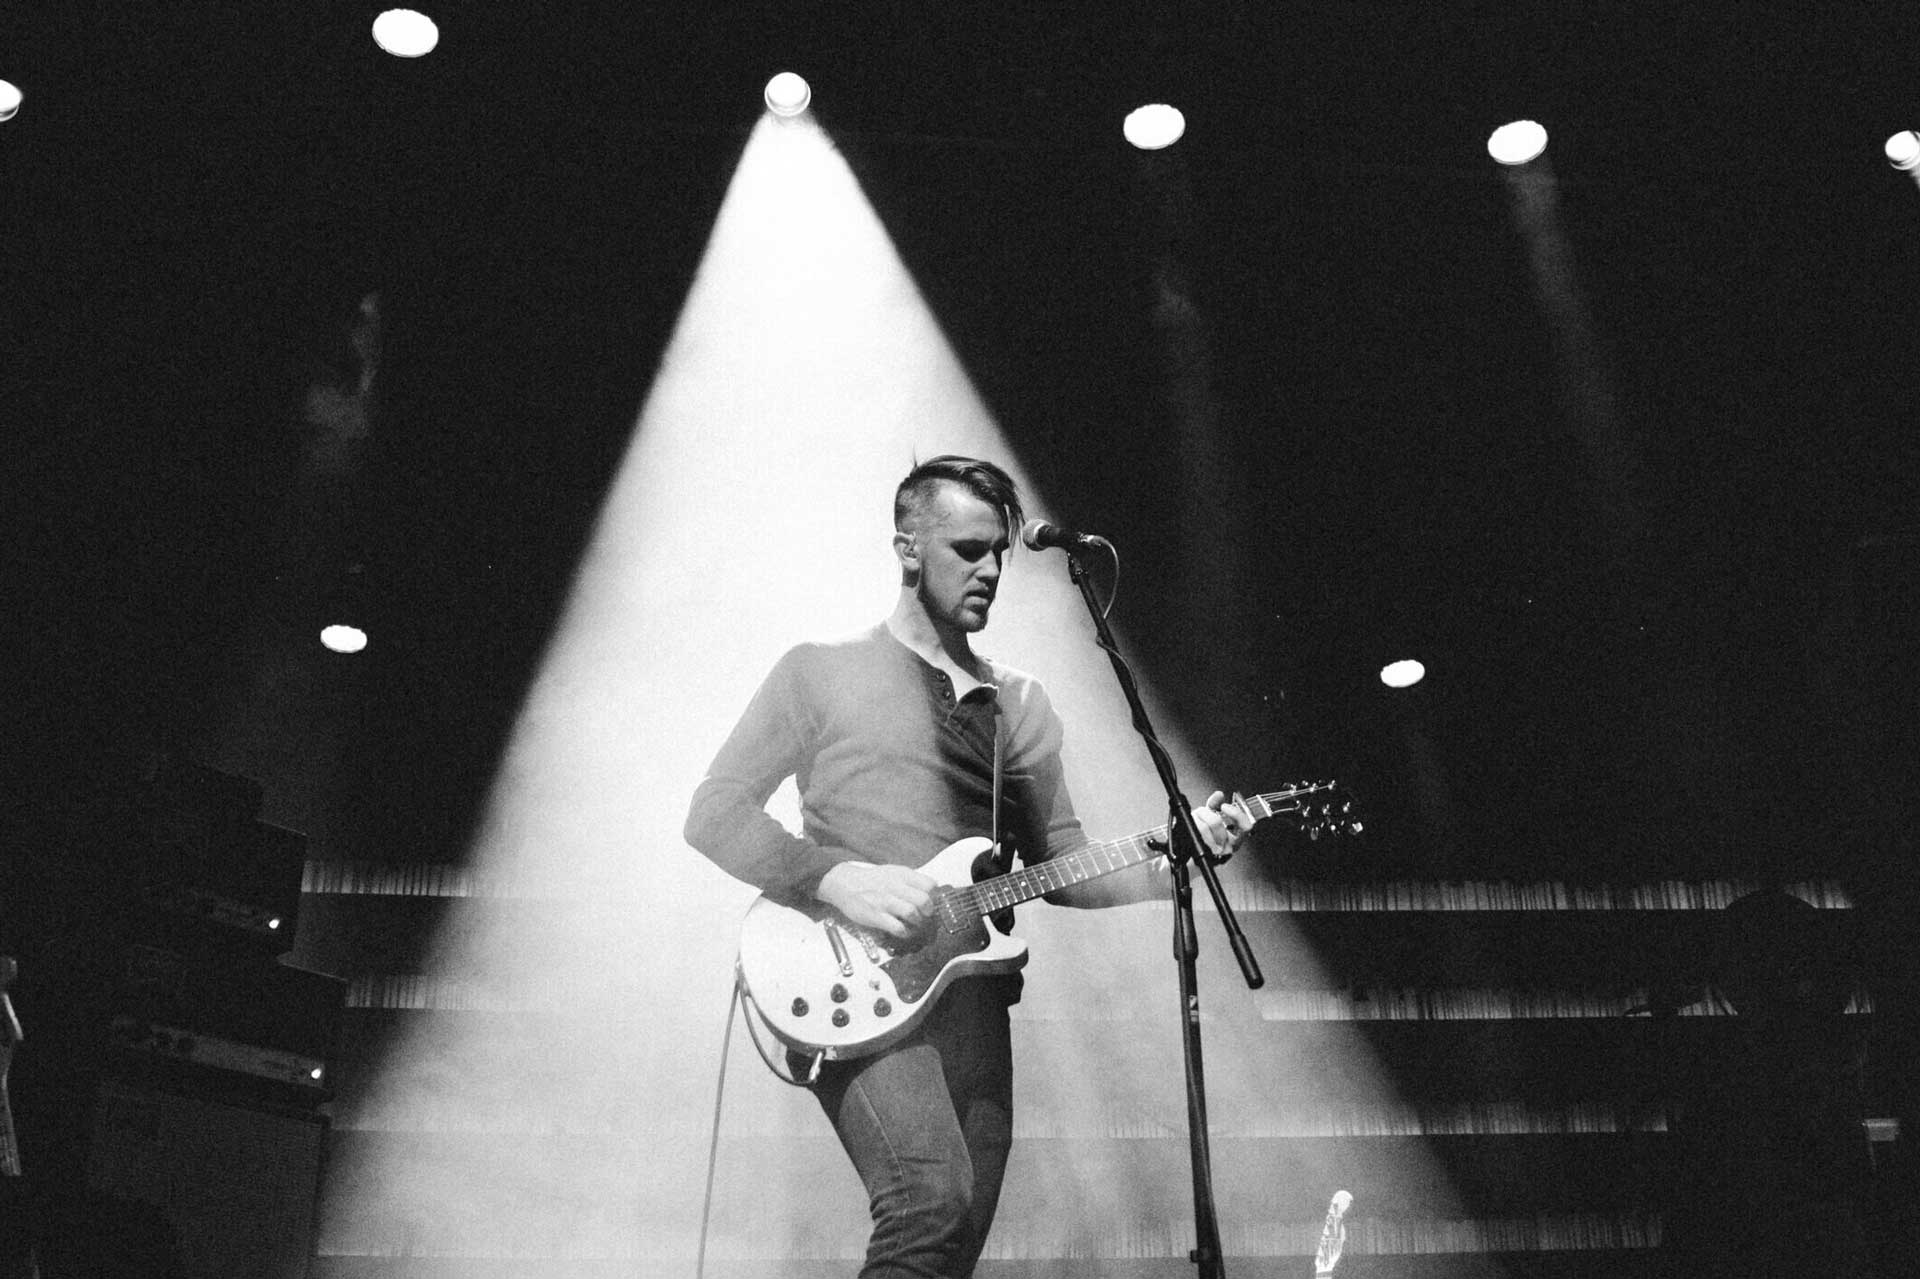 Muzyk Peter Ferguson na scenie z gitarą i mikrofonem w świetle reflektorów